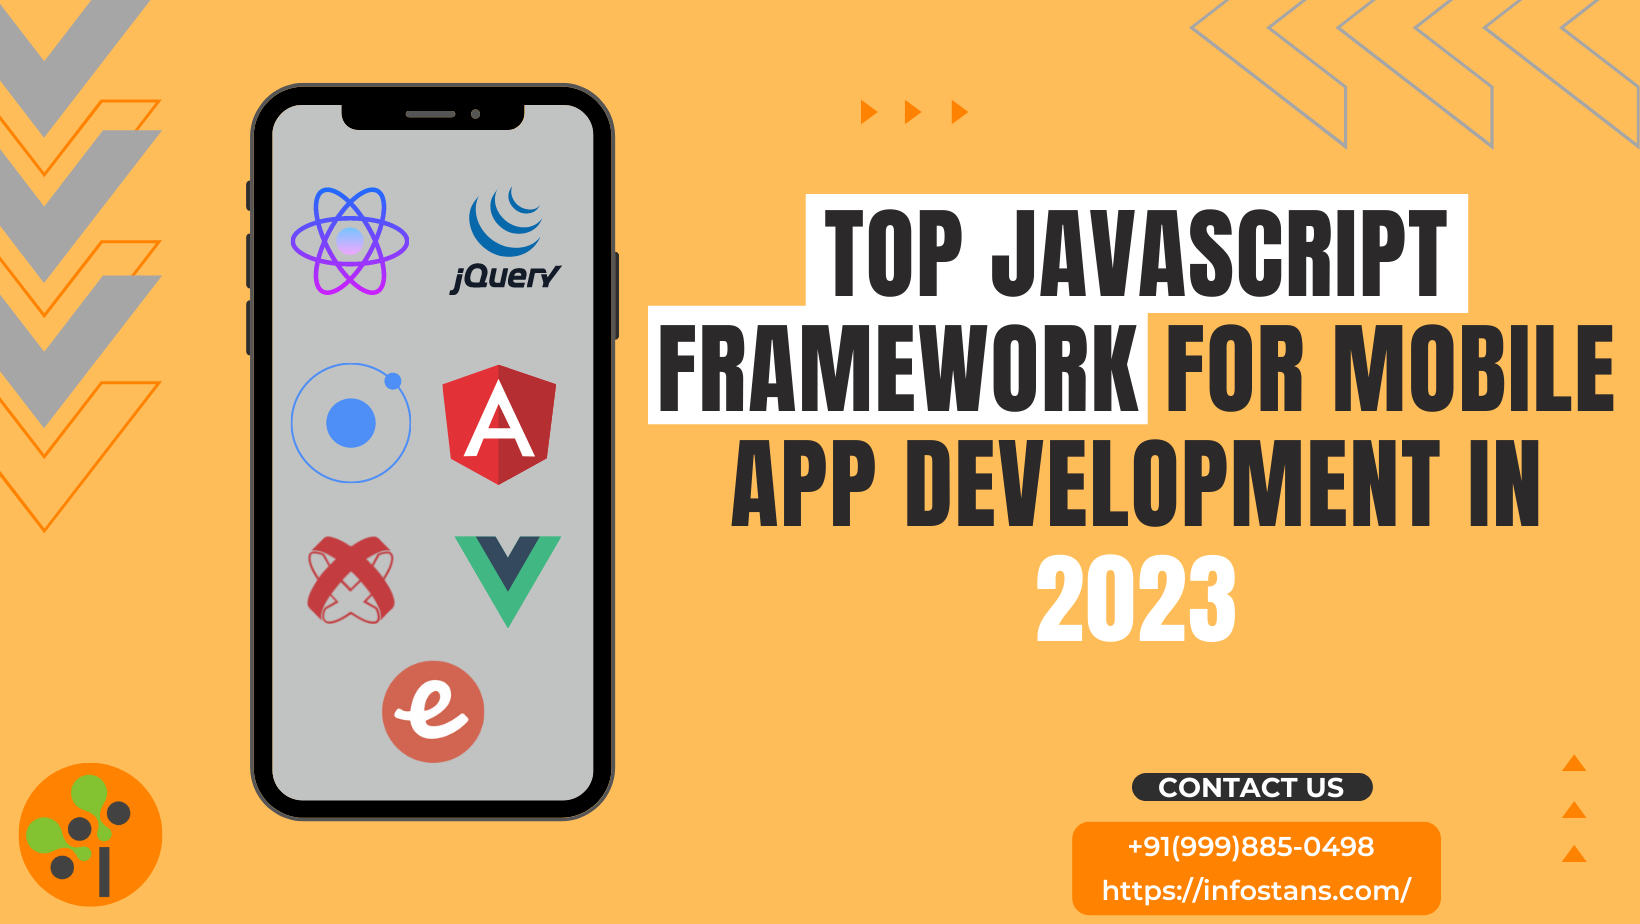 Top JavaScript Framework for Mobile App Development